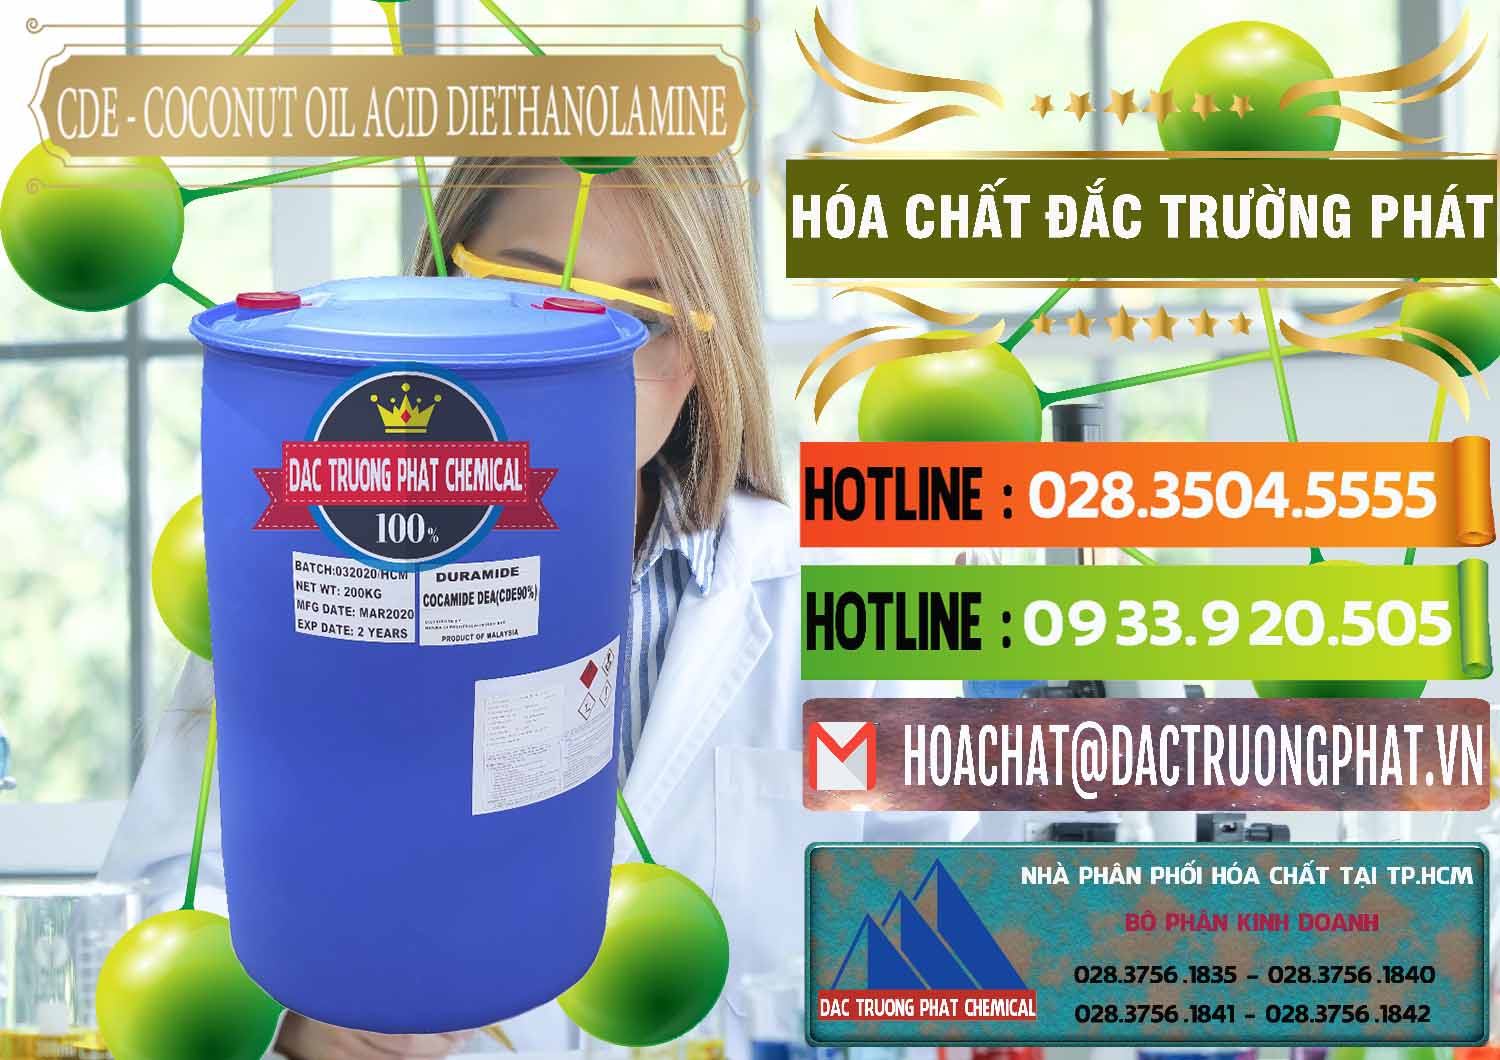 Nơi chuyên bán ( cung cấp ) CDE - Coconut Oil Acid Diethanolamine Mã Lai Malaysia - 0311 - Cty chuyên phân phối _ nhập khẩu hóa chất tại TP.HCM - cungcaphoachat.com.vn